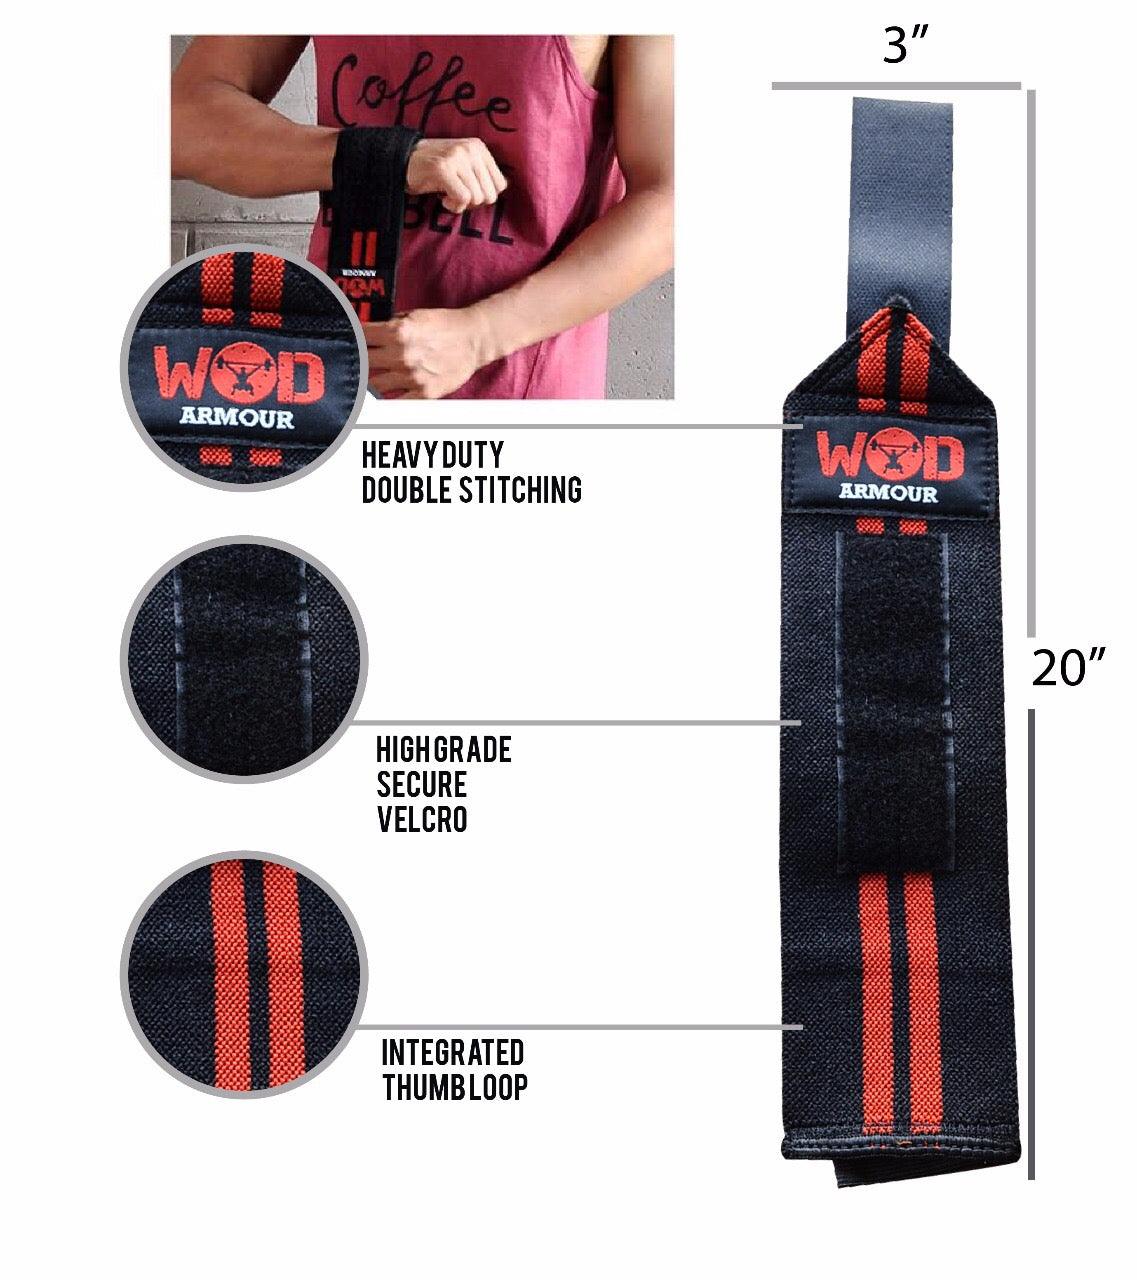 Wrist strap - wodarmour